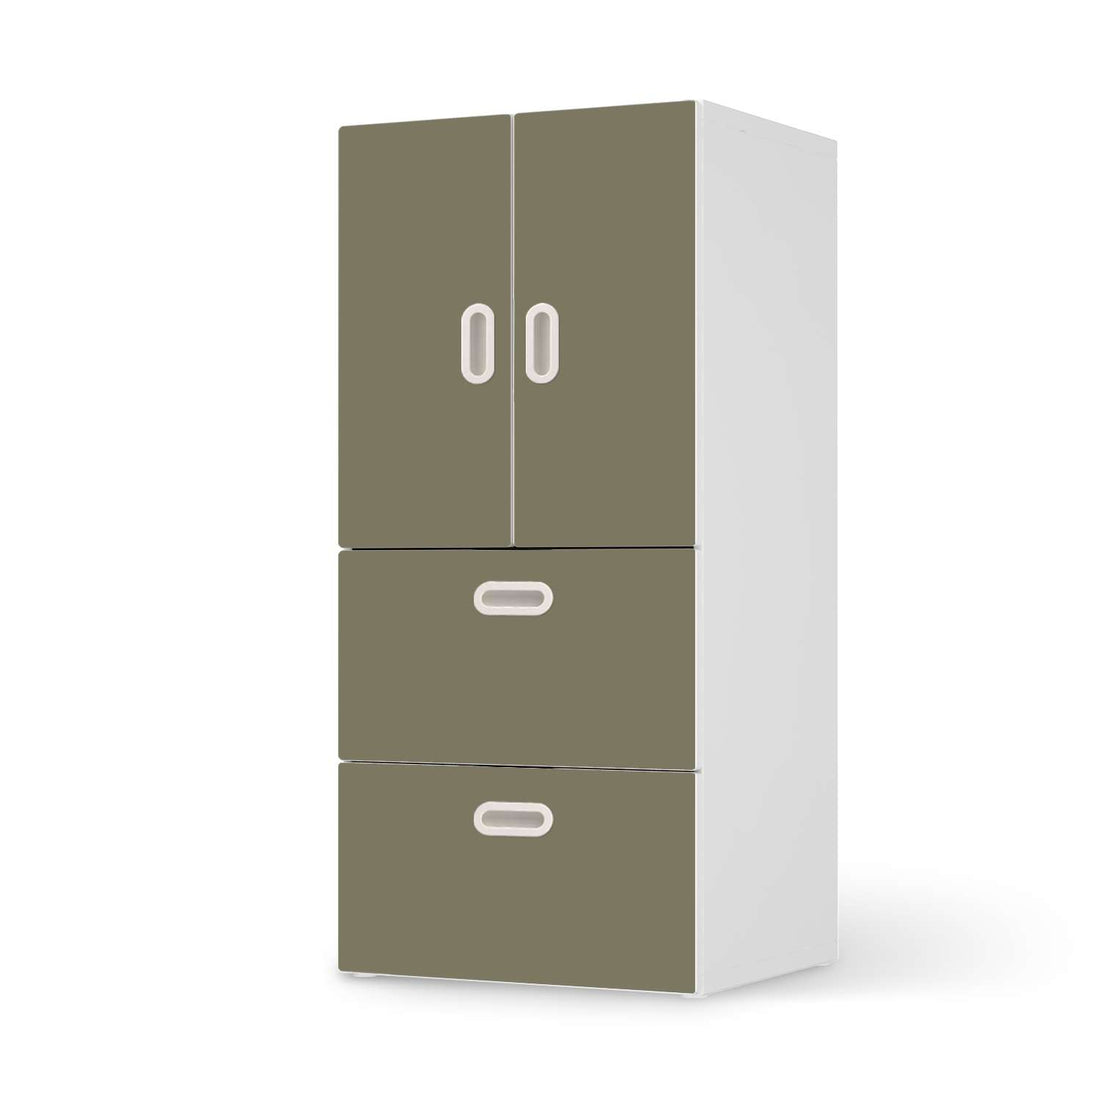 Möbelfolie Braungrau Light - IKEA Stuva / Fritids kombiniert - 2 Schubladen und 2 kleine Türen  - weiss